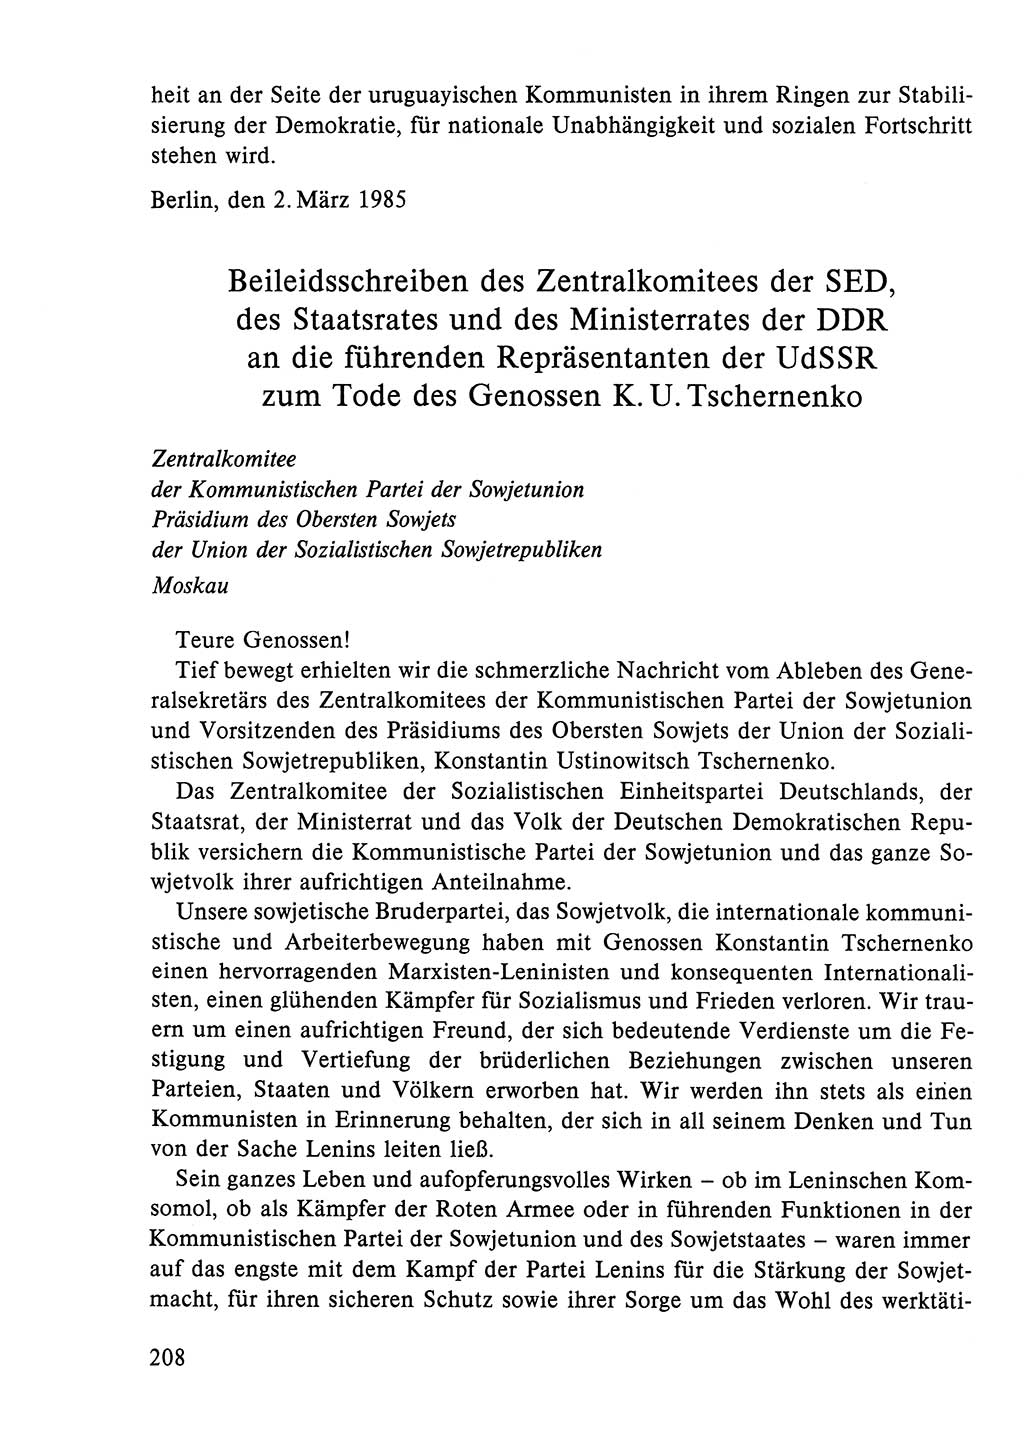 Dokumente der Sozialistischen Einheitspartei Deutschlands (SED) [Deutsche Demokratische Republik (DDR)] 1984-1985, Seite 219 (Dok. SED DDR 1984-1985, S. 219)